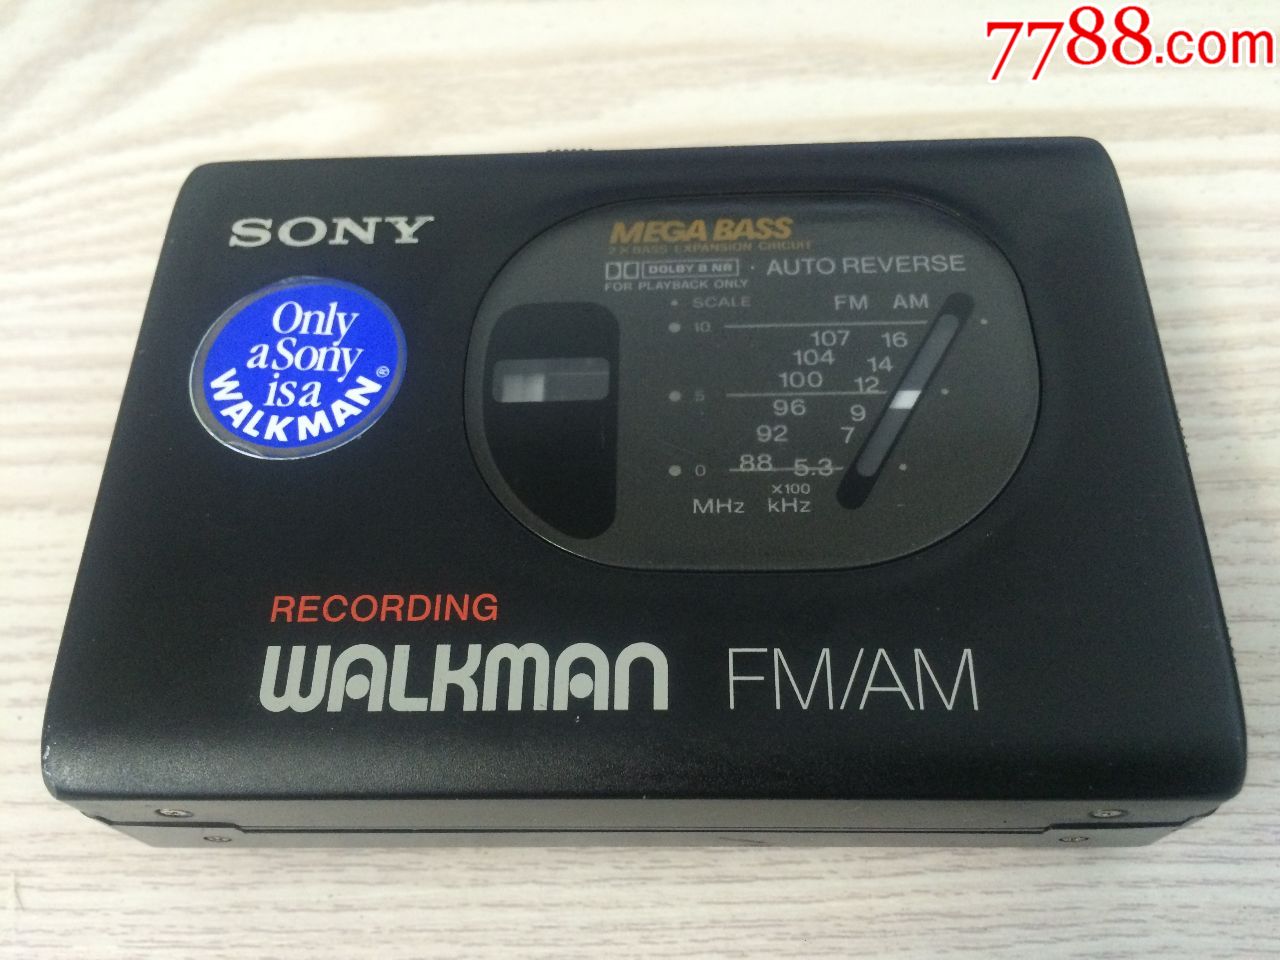 一台经典收藏sonywm-gx50收录放磁带随身听,送磁带一盘.